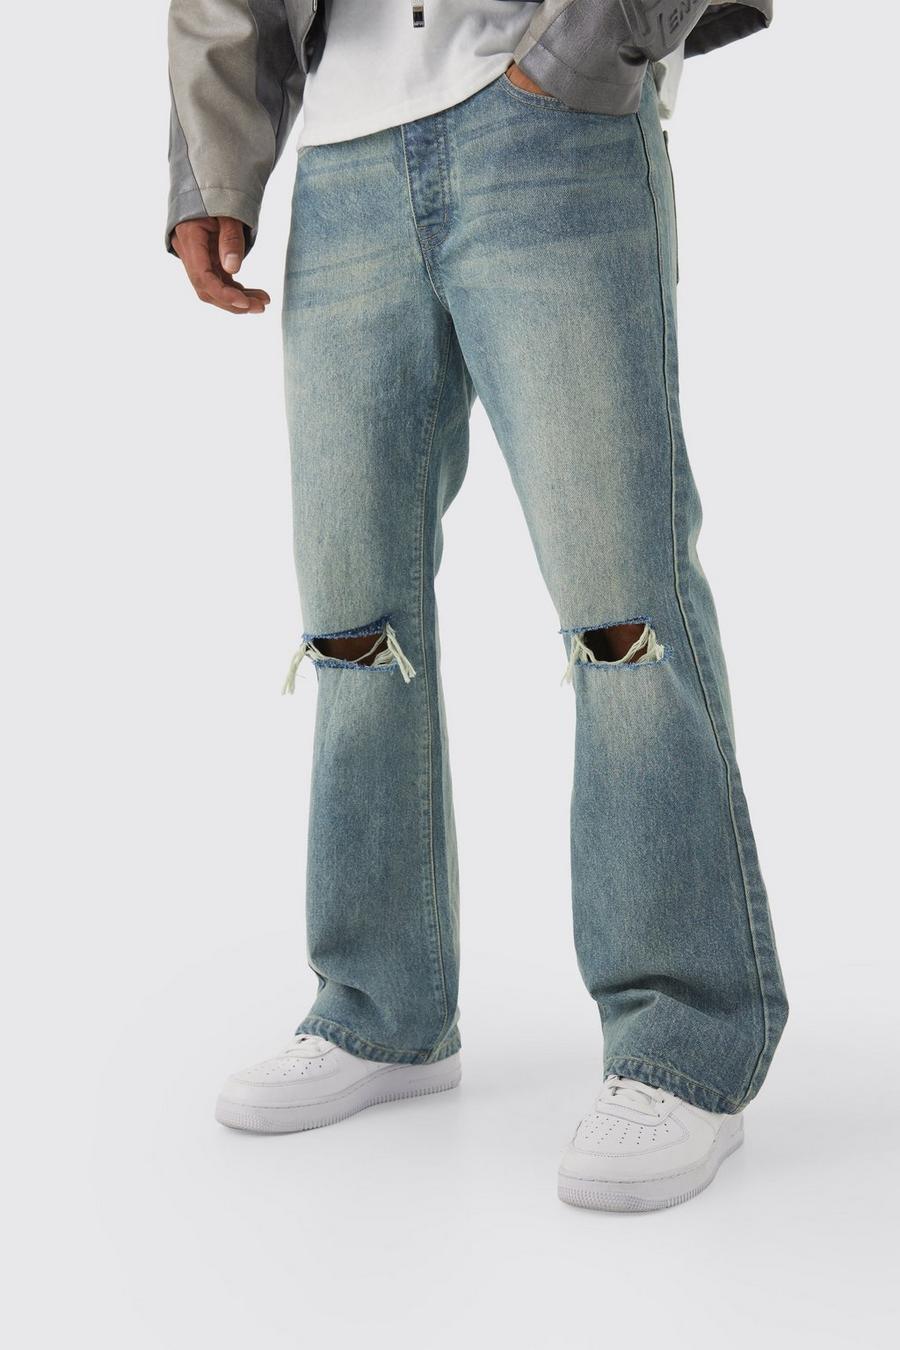 Jeans a zampa rilassati in denim rigido con strappi sul ginocchio, Antique blue